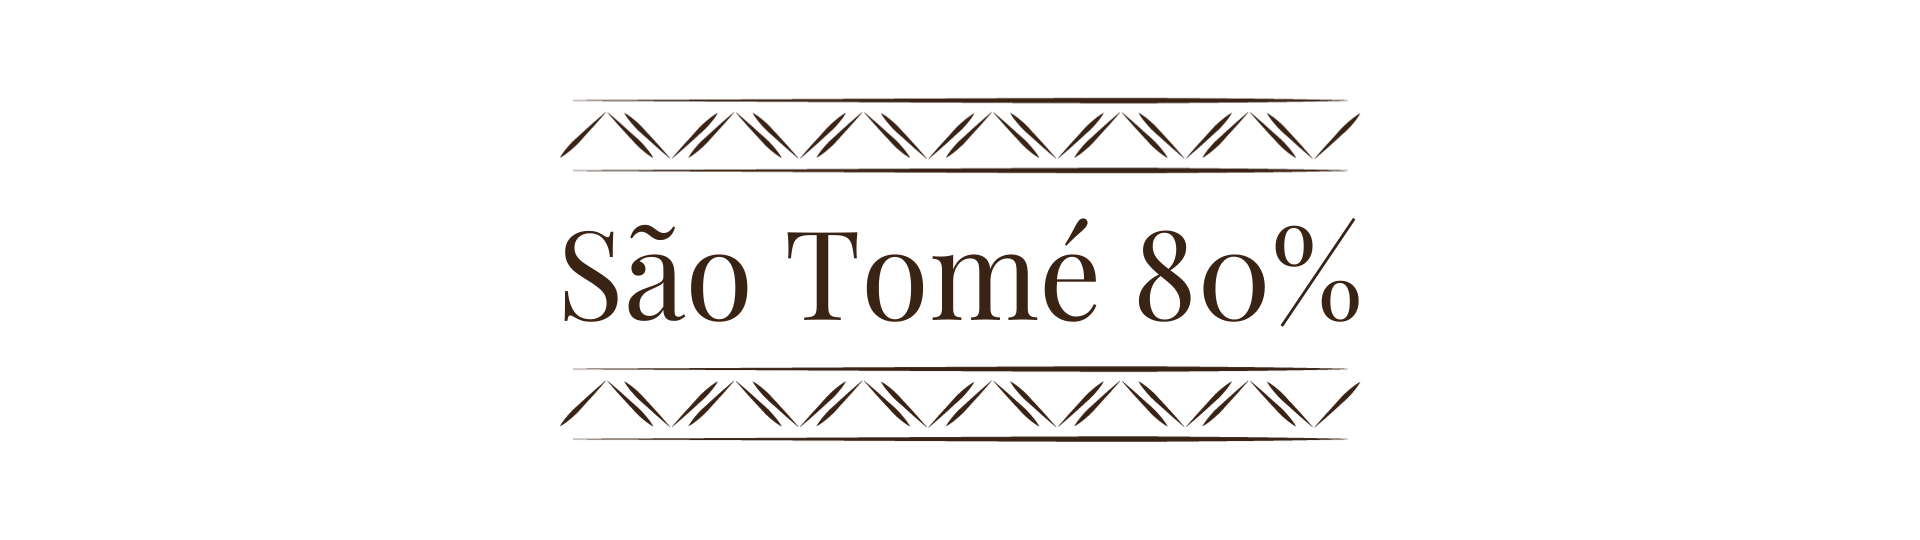 São Tomé 80%